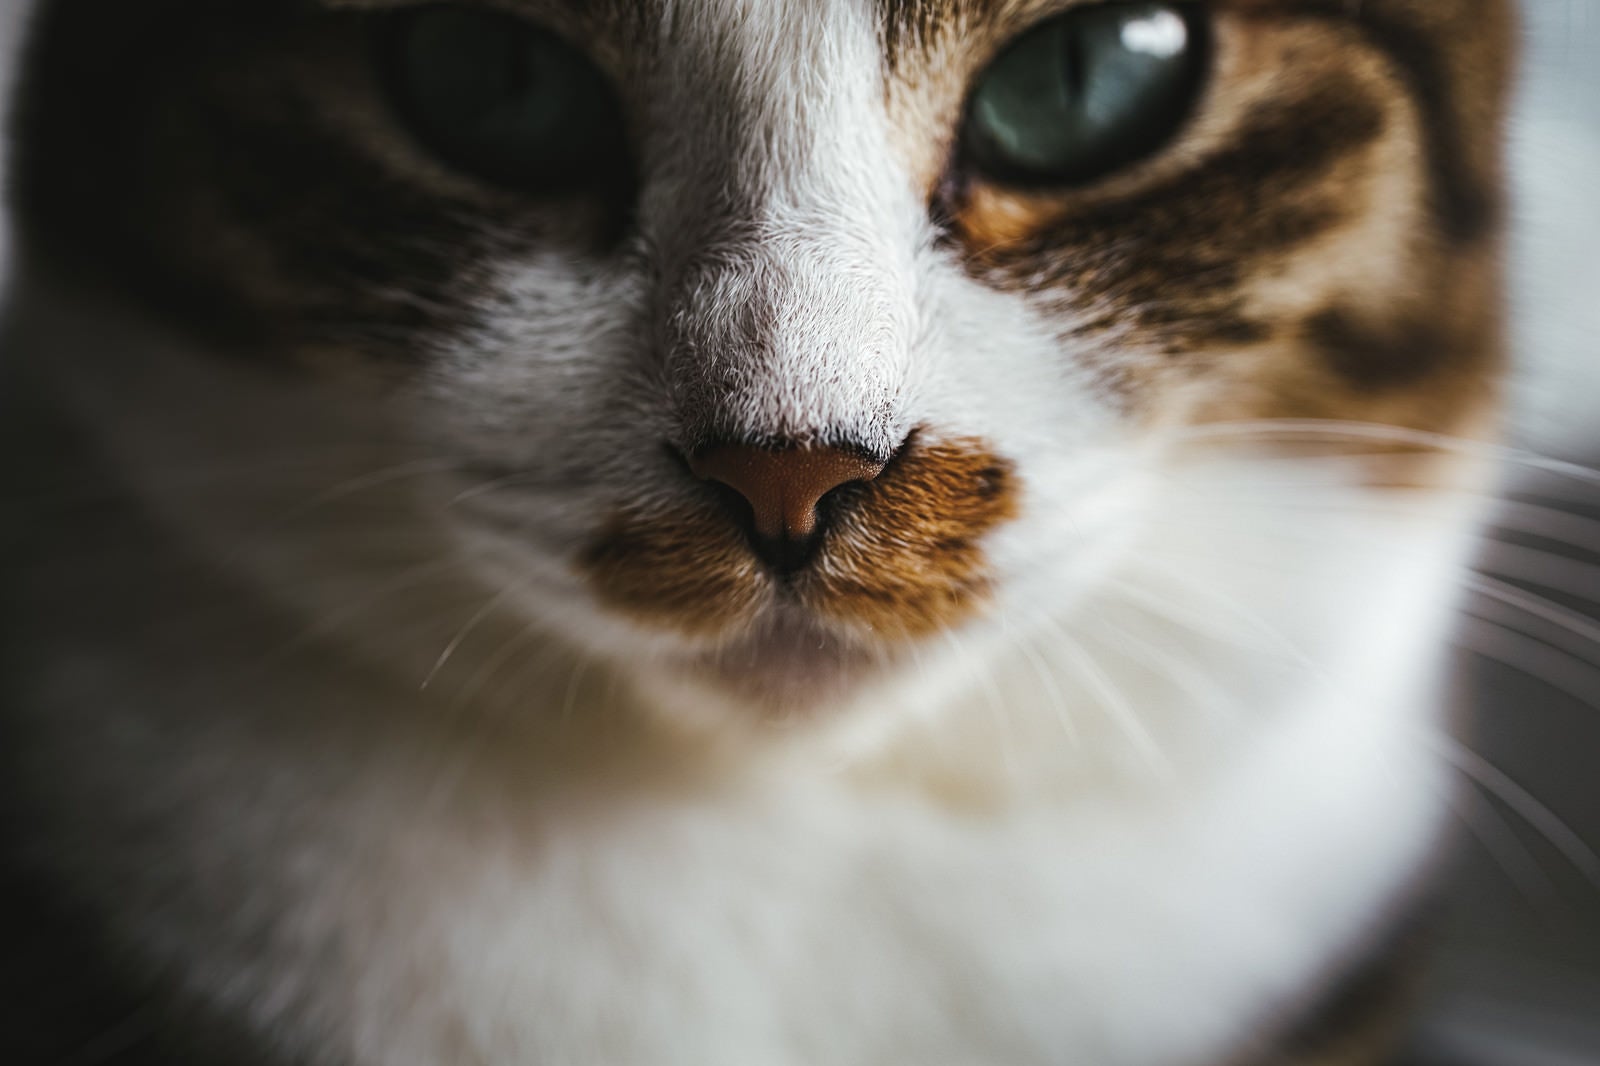 「クソリプに対する冷静な猫さん」の写真